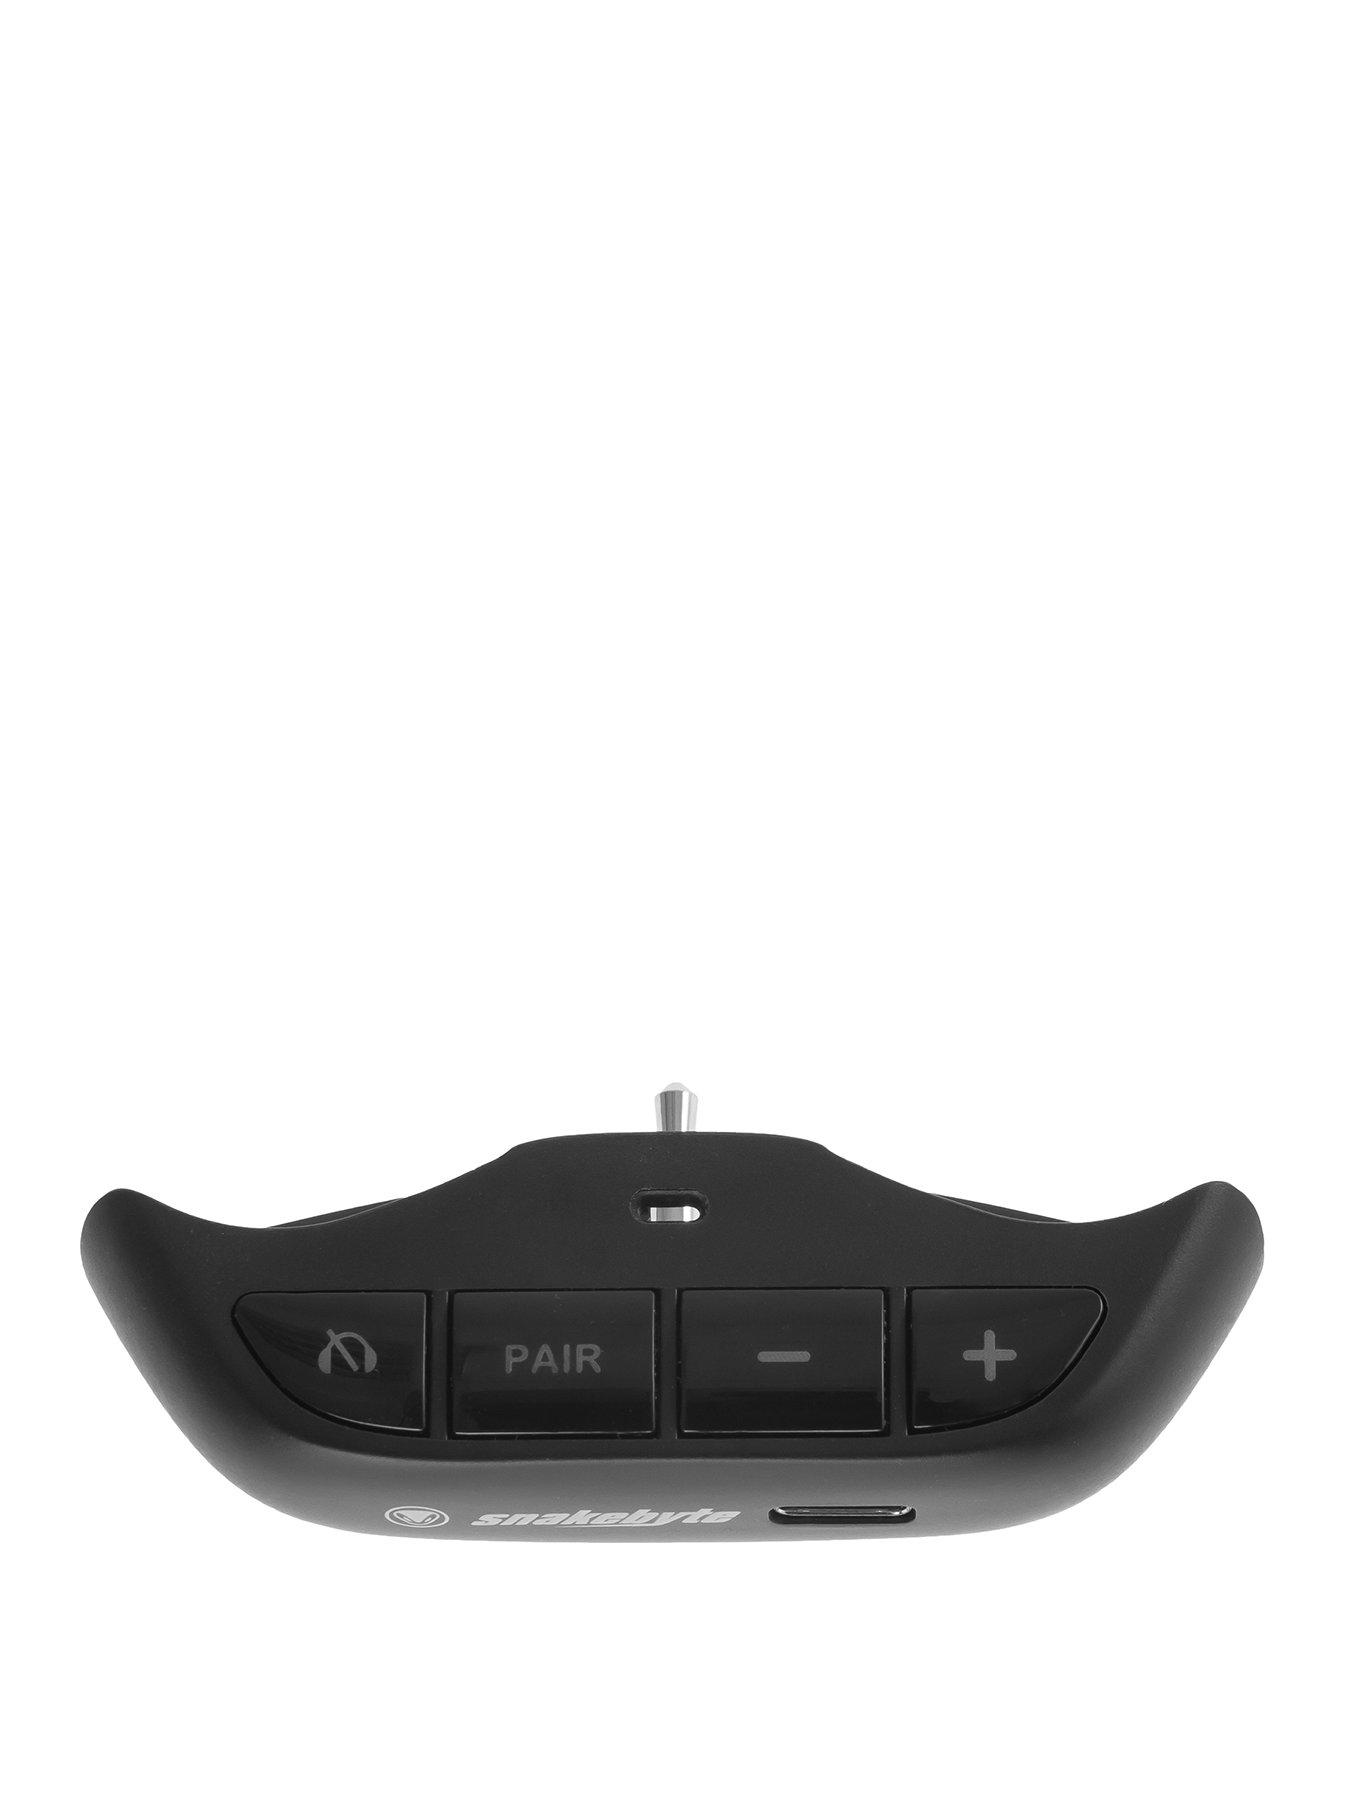 Snakebyte PS5 Bluetooth Headset Adapter by Snakebyte | very.co.uk